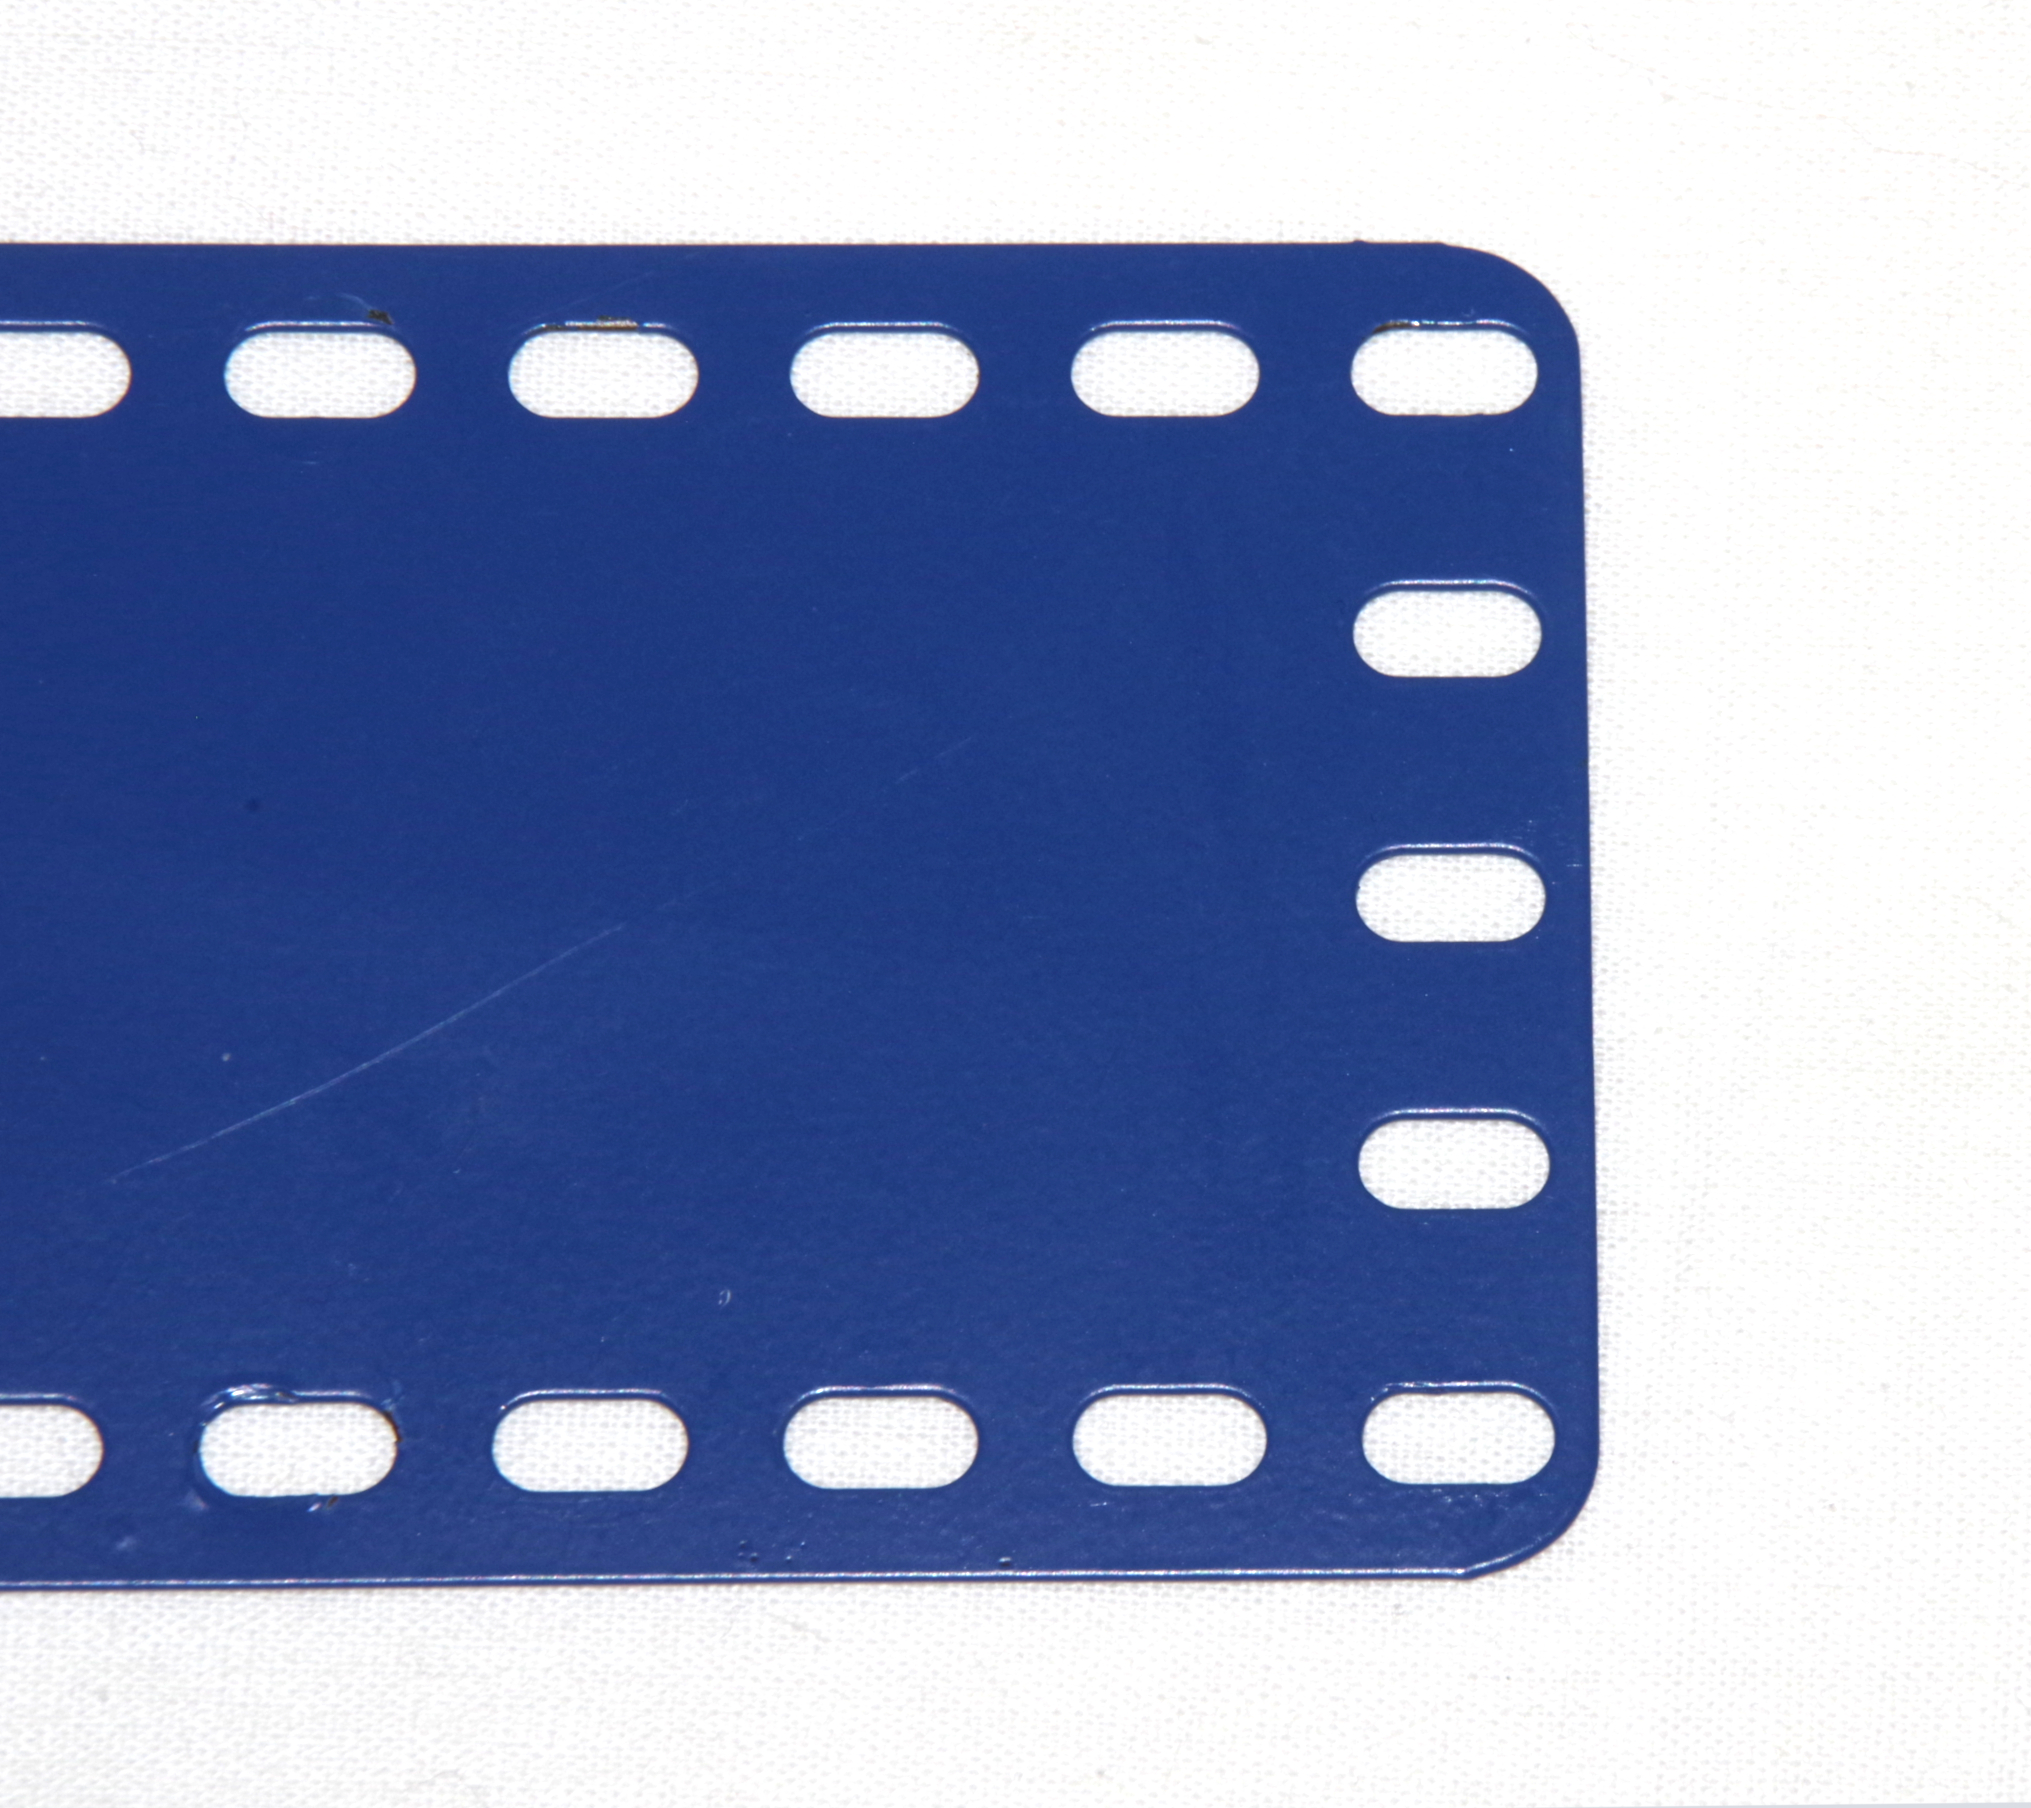 4505-09 Flat Plate 9x5 Metallus Blue Used